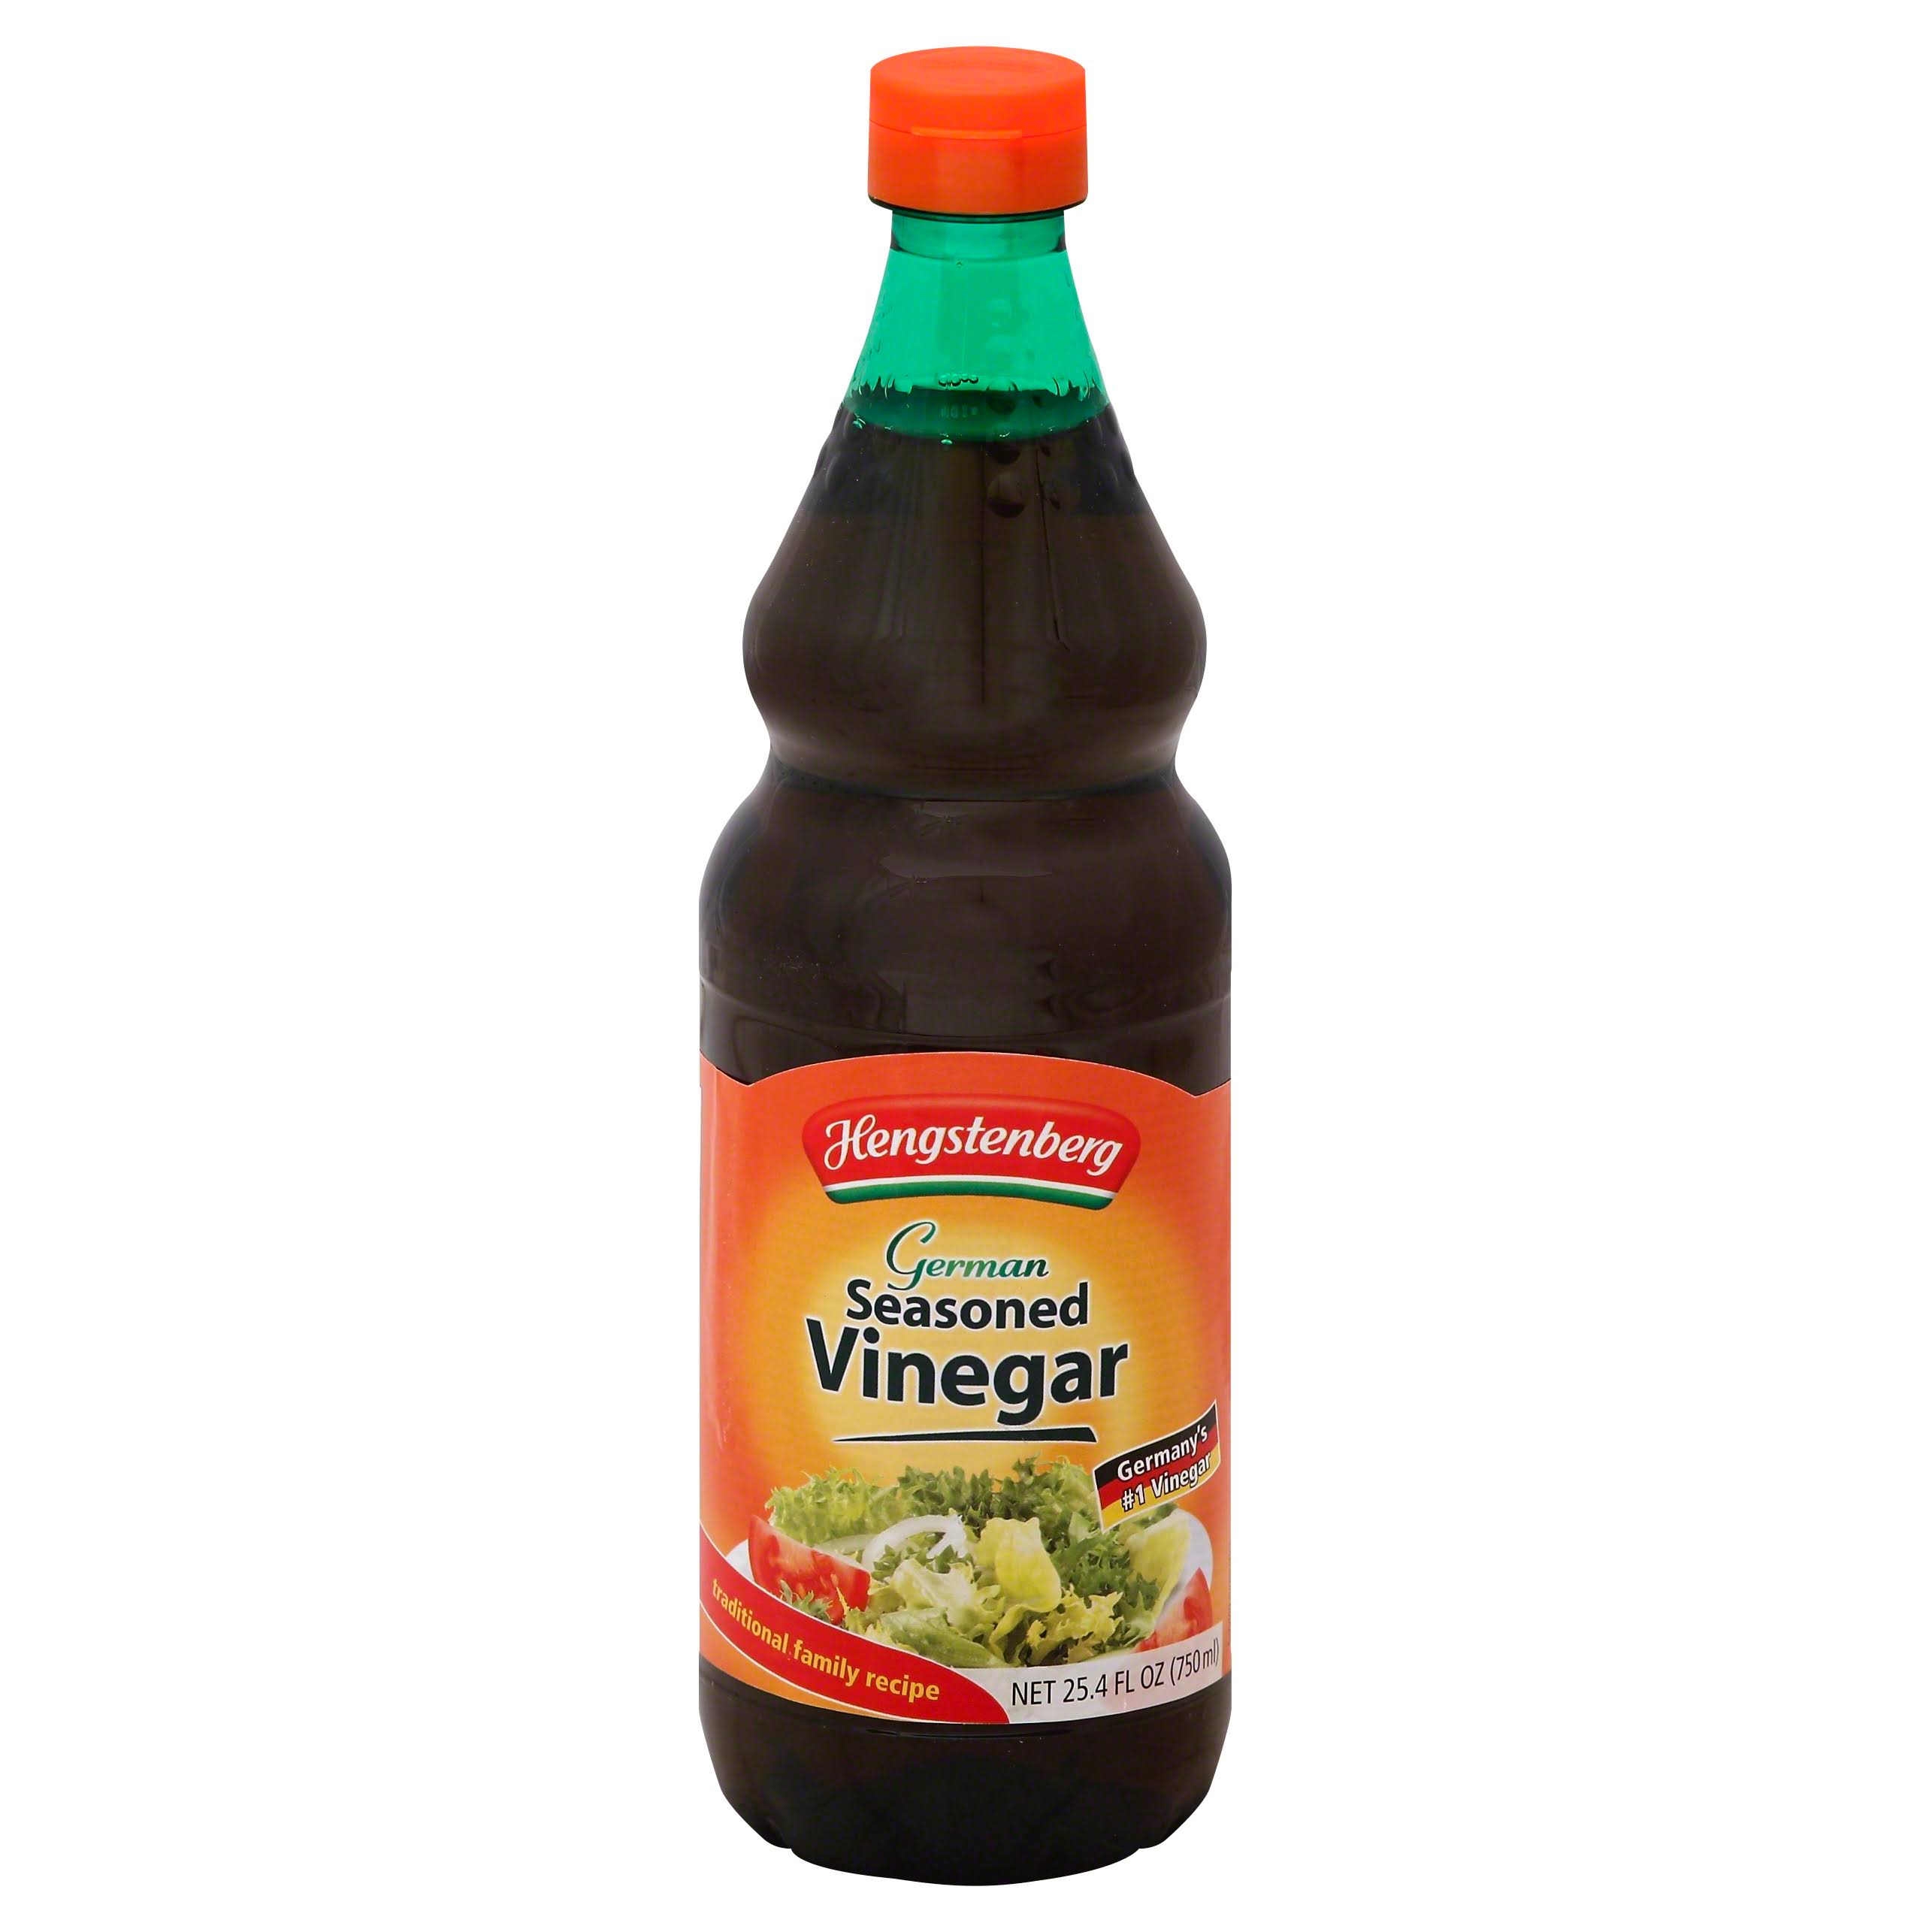 Hengstenberg German Seasoned Vinegar